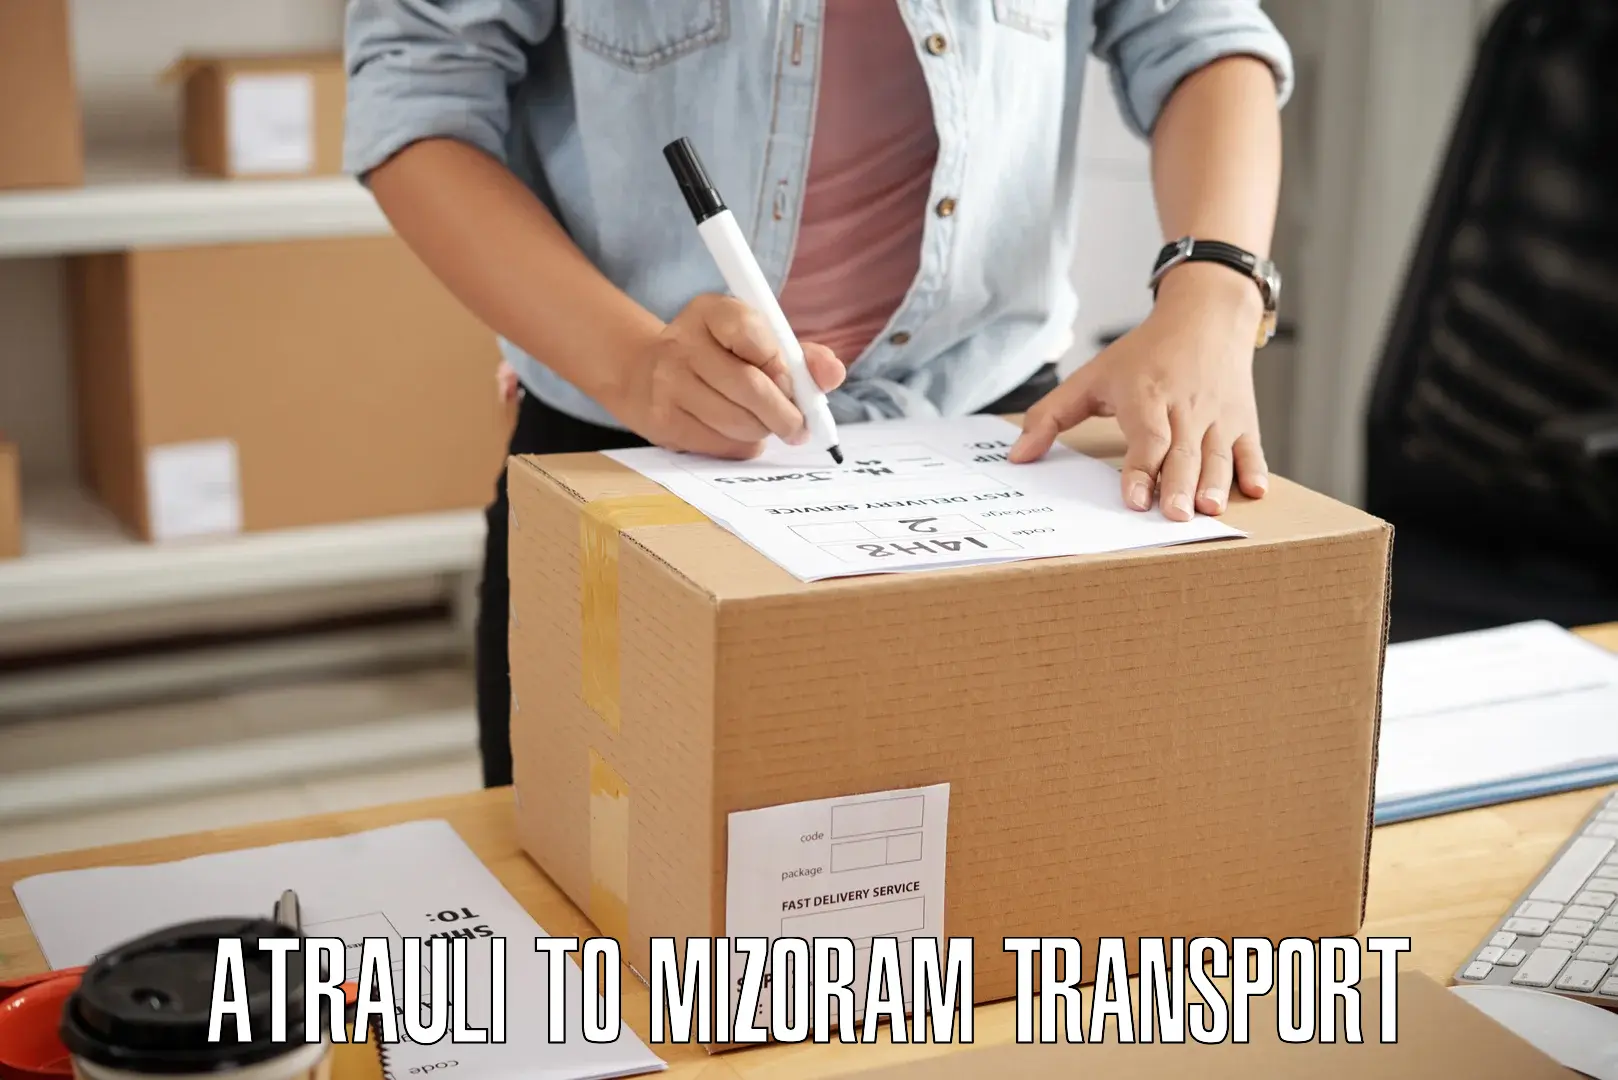 Scooty transport charges Atrauli to Mizoram